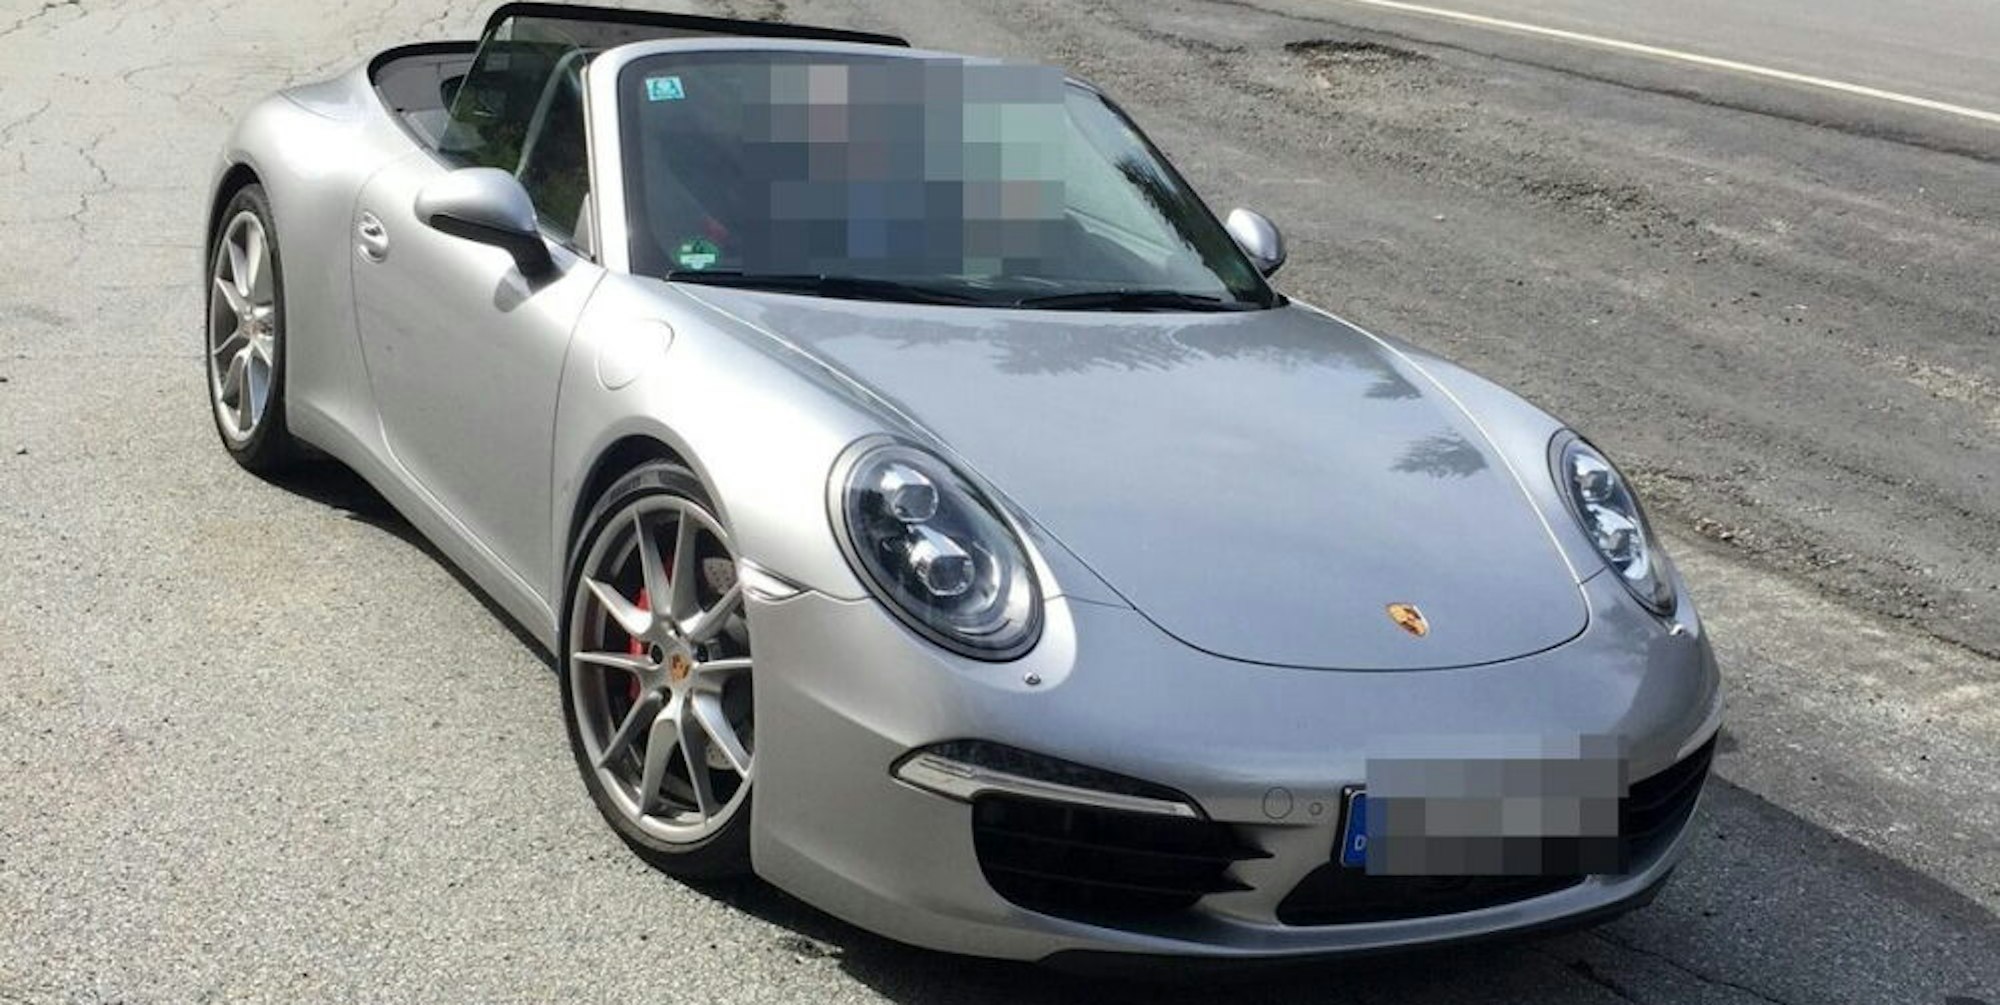 Einbrecher stahlen in Pulheim diesen Porsche. Die Polizei hofft auf Hinweise.